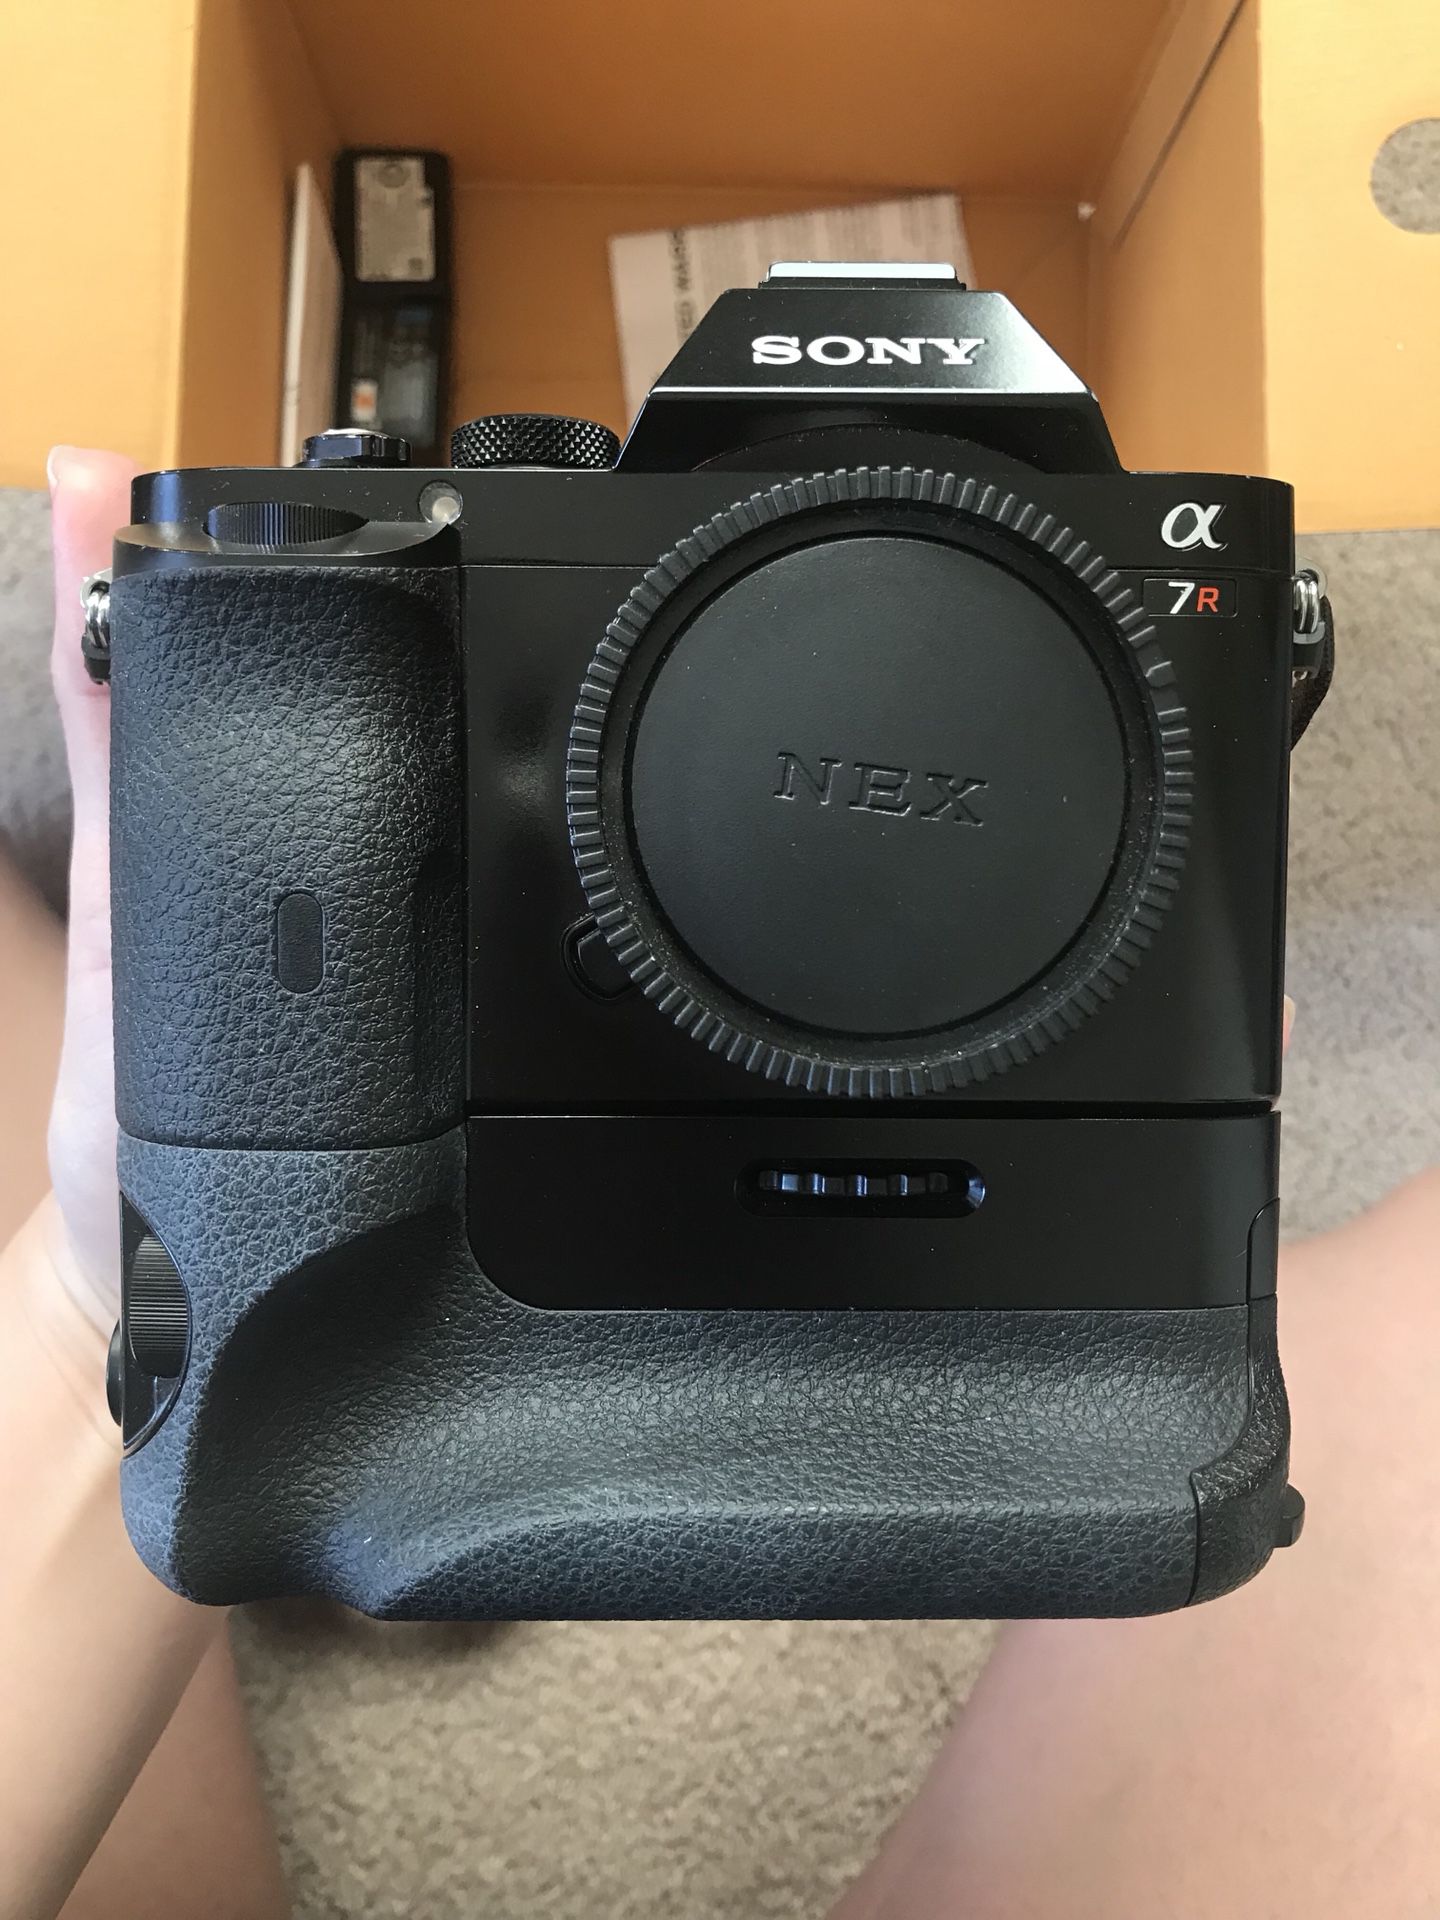 Sony A7R digital camera